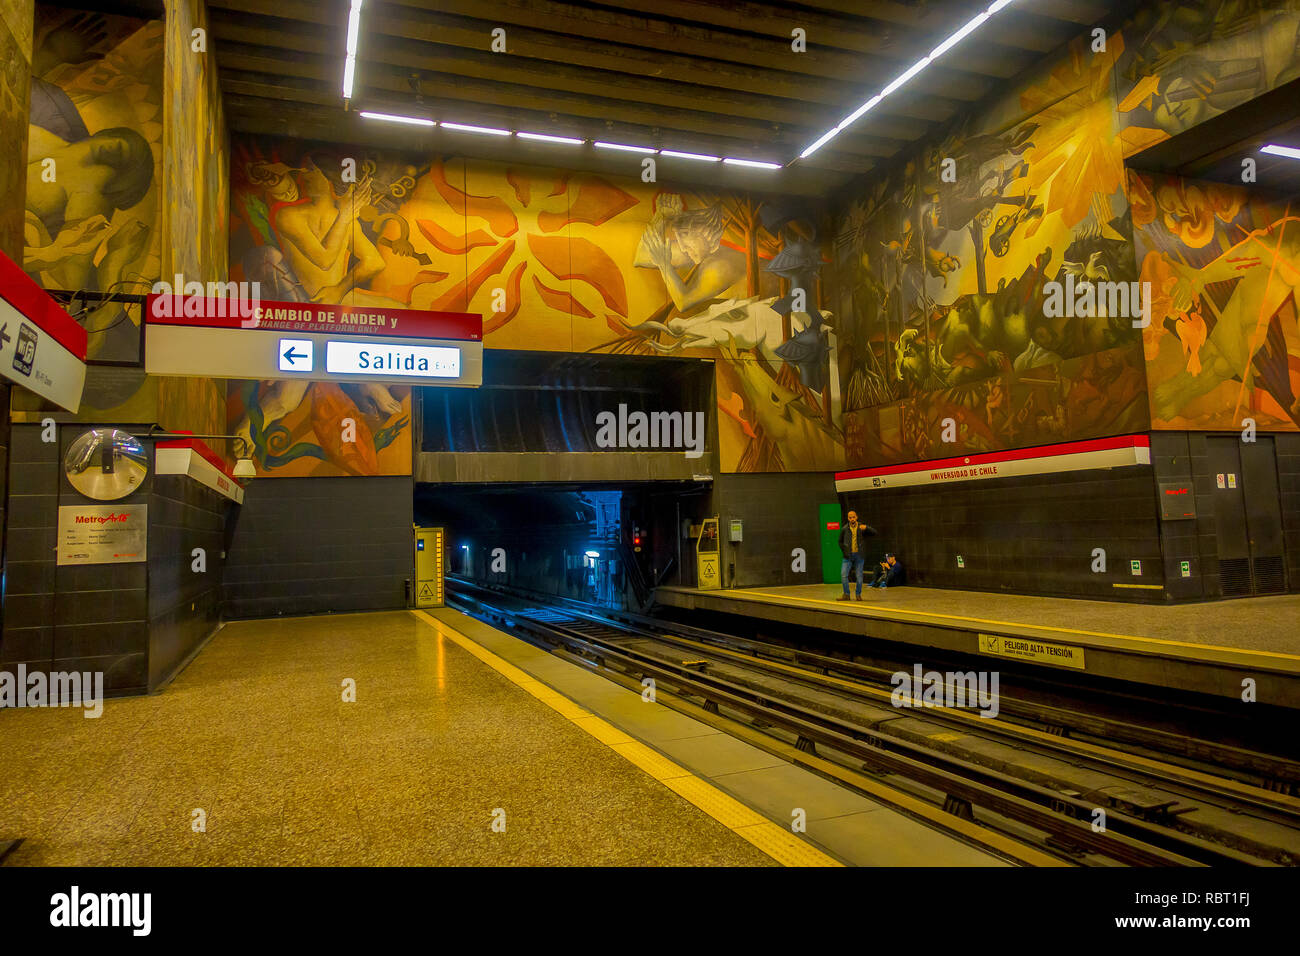 SANTIAGO, CHILI - 16 octobre 2018 : à l'intérieur de la personne dans le métro situé dans la ville de Santiago du Chili, les trains arrivent à la station de métro dans le centre de la ville Banque D'Images